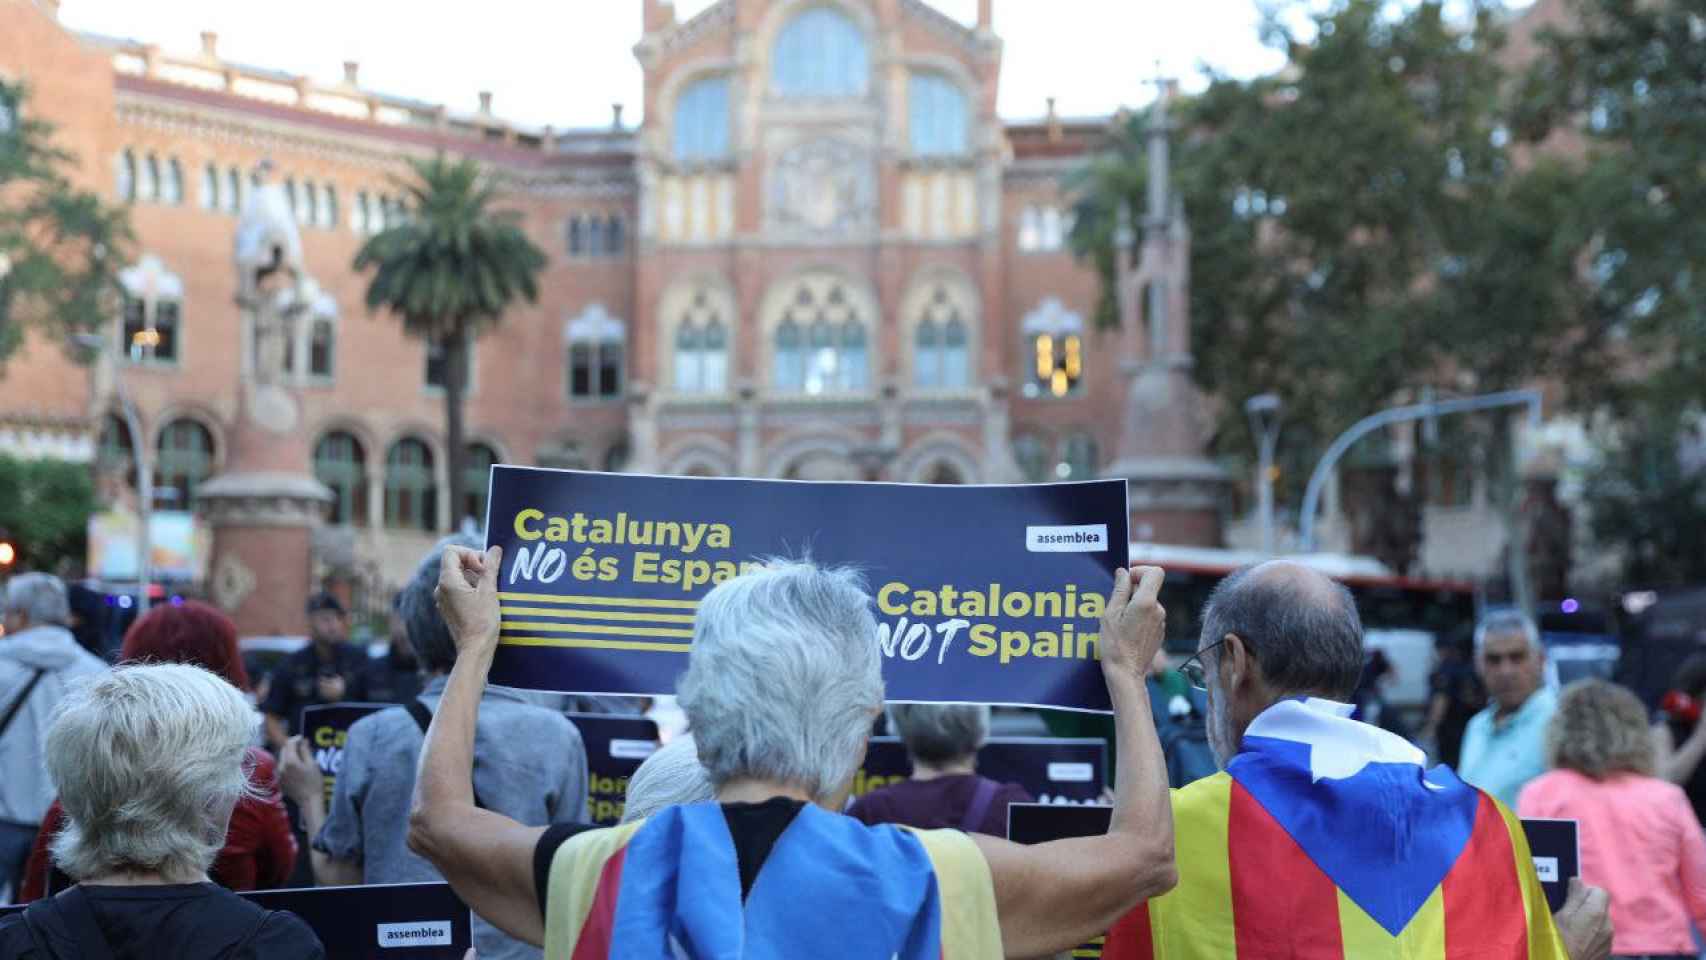 La ANC ha protestado ante la reunión informal de ministros de transporte de la UE en Barcelona